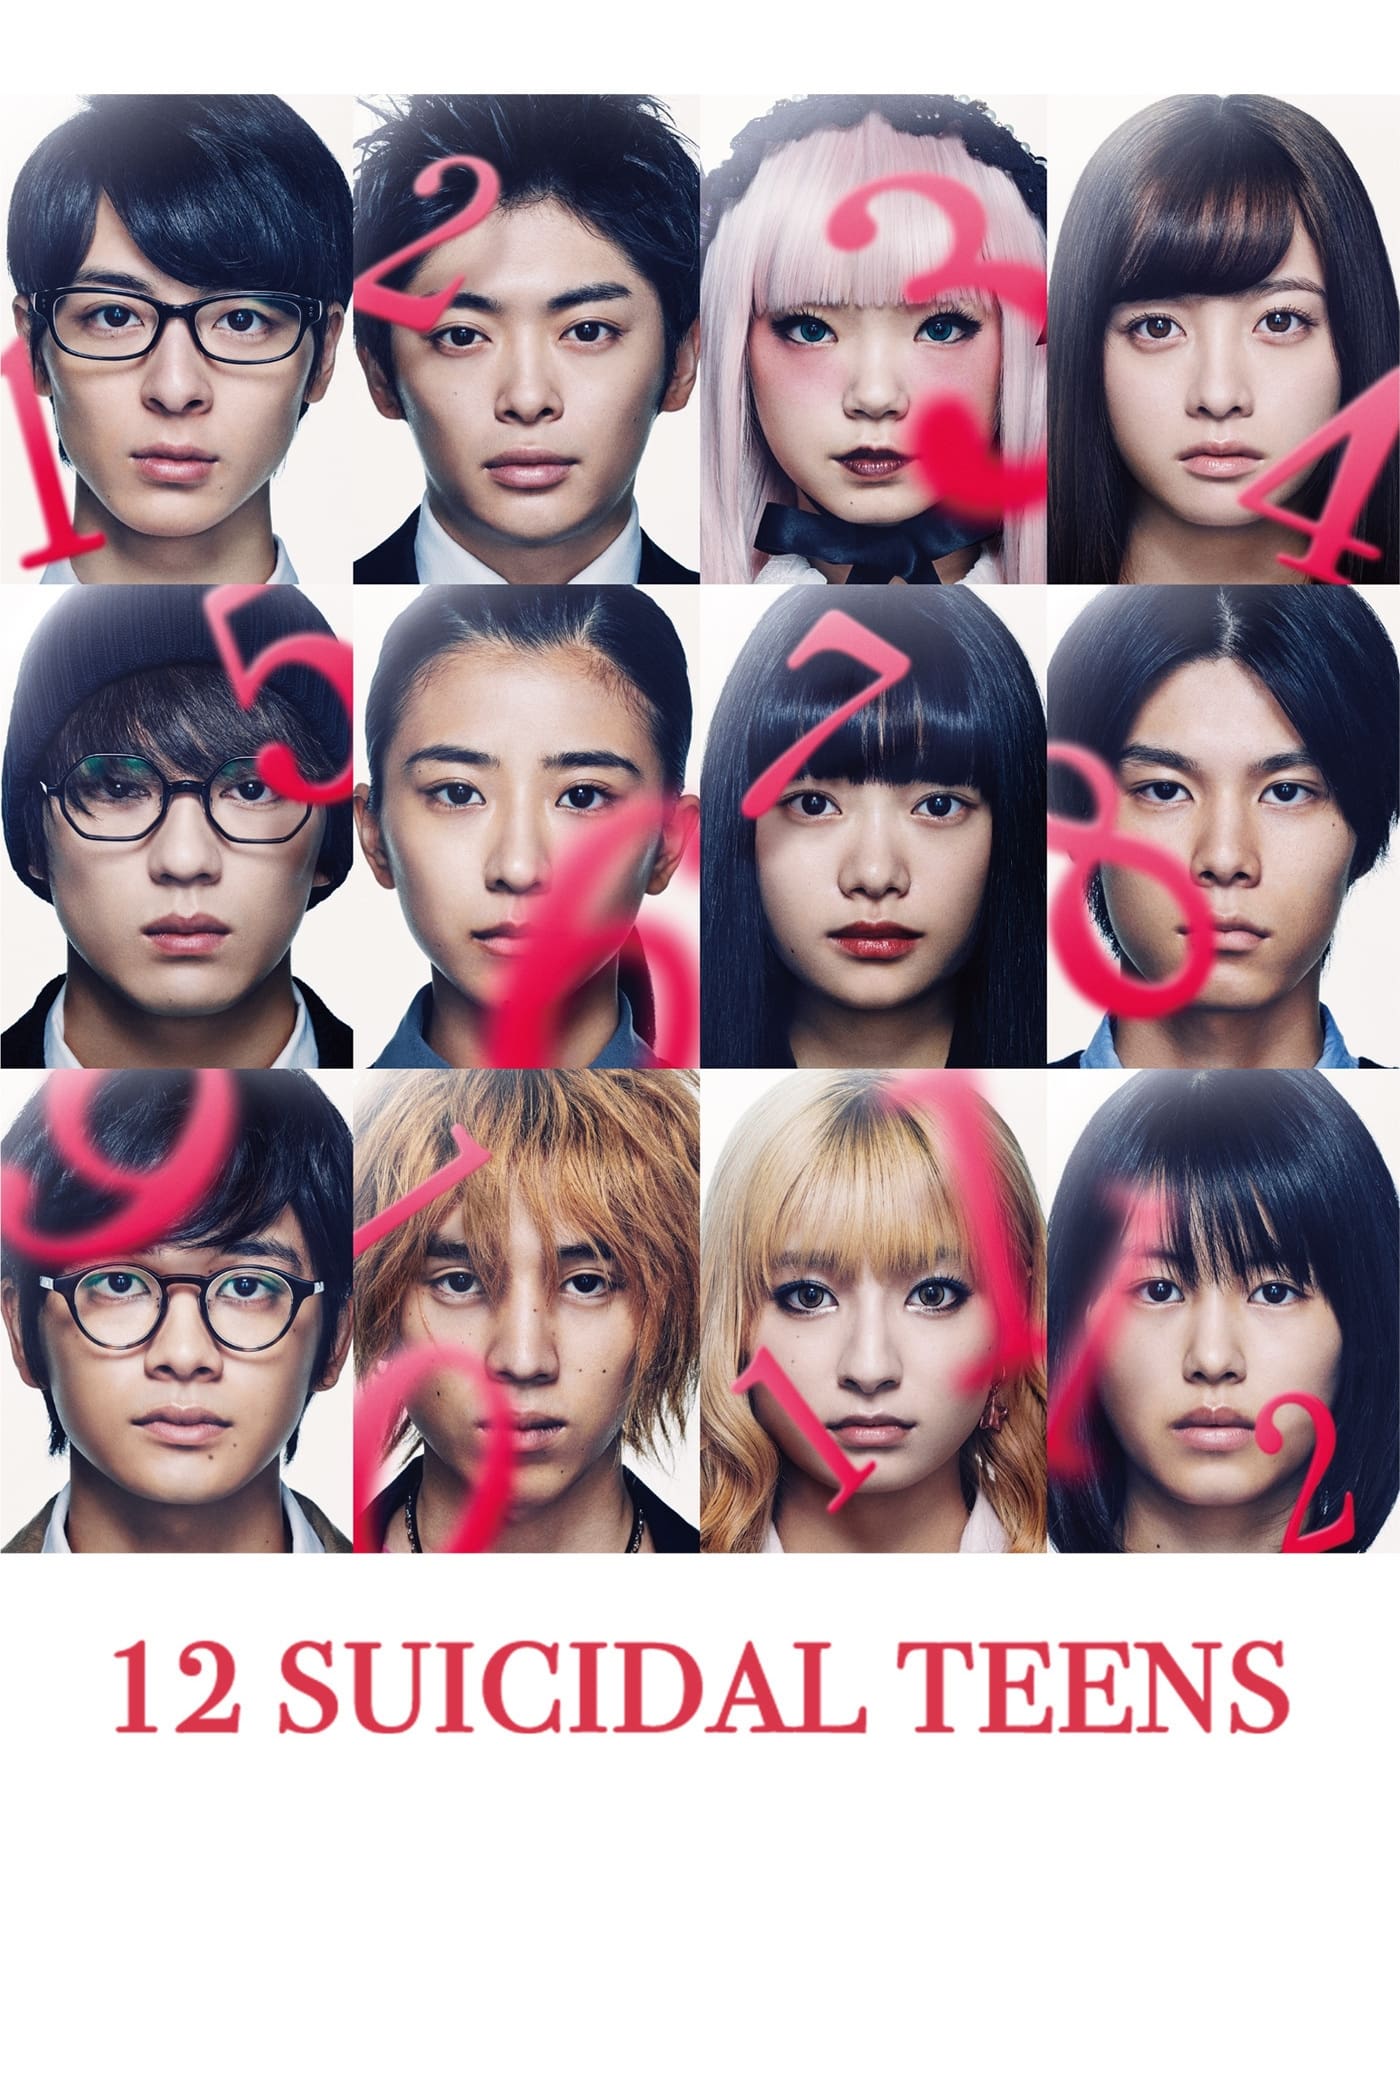 12 Suicidal Teens (2019)